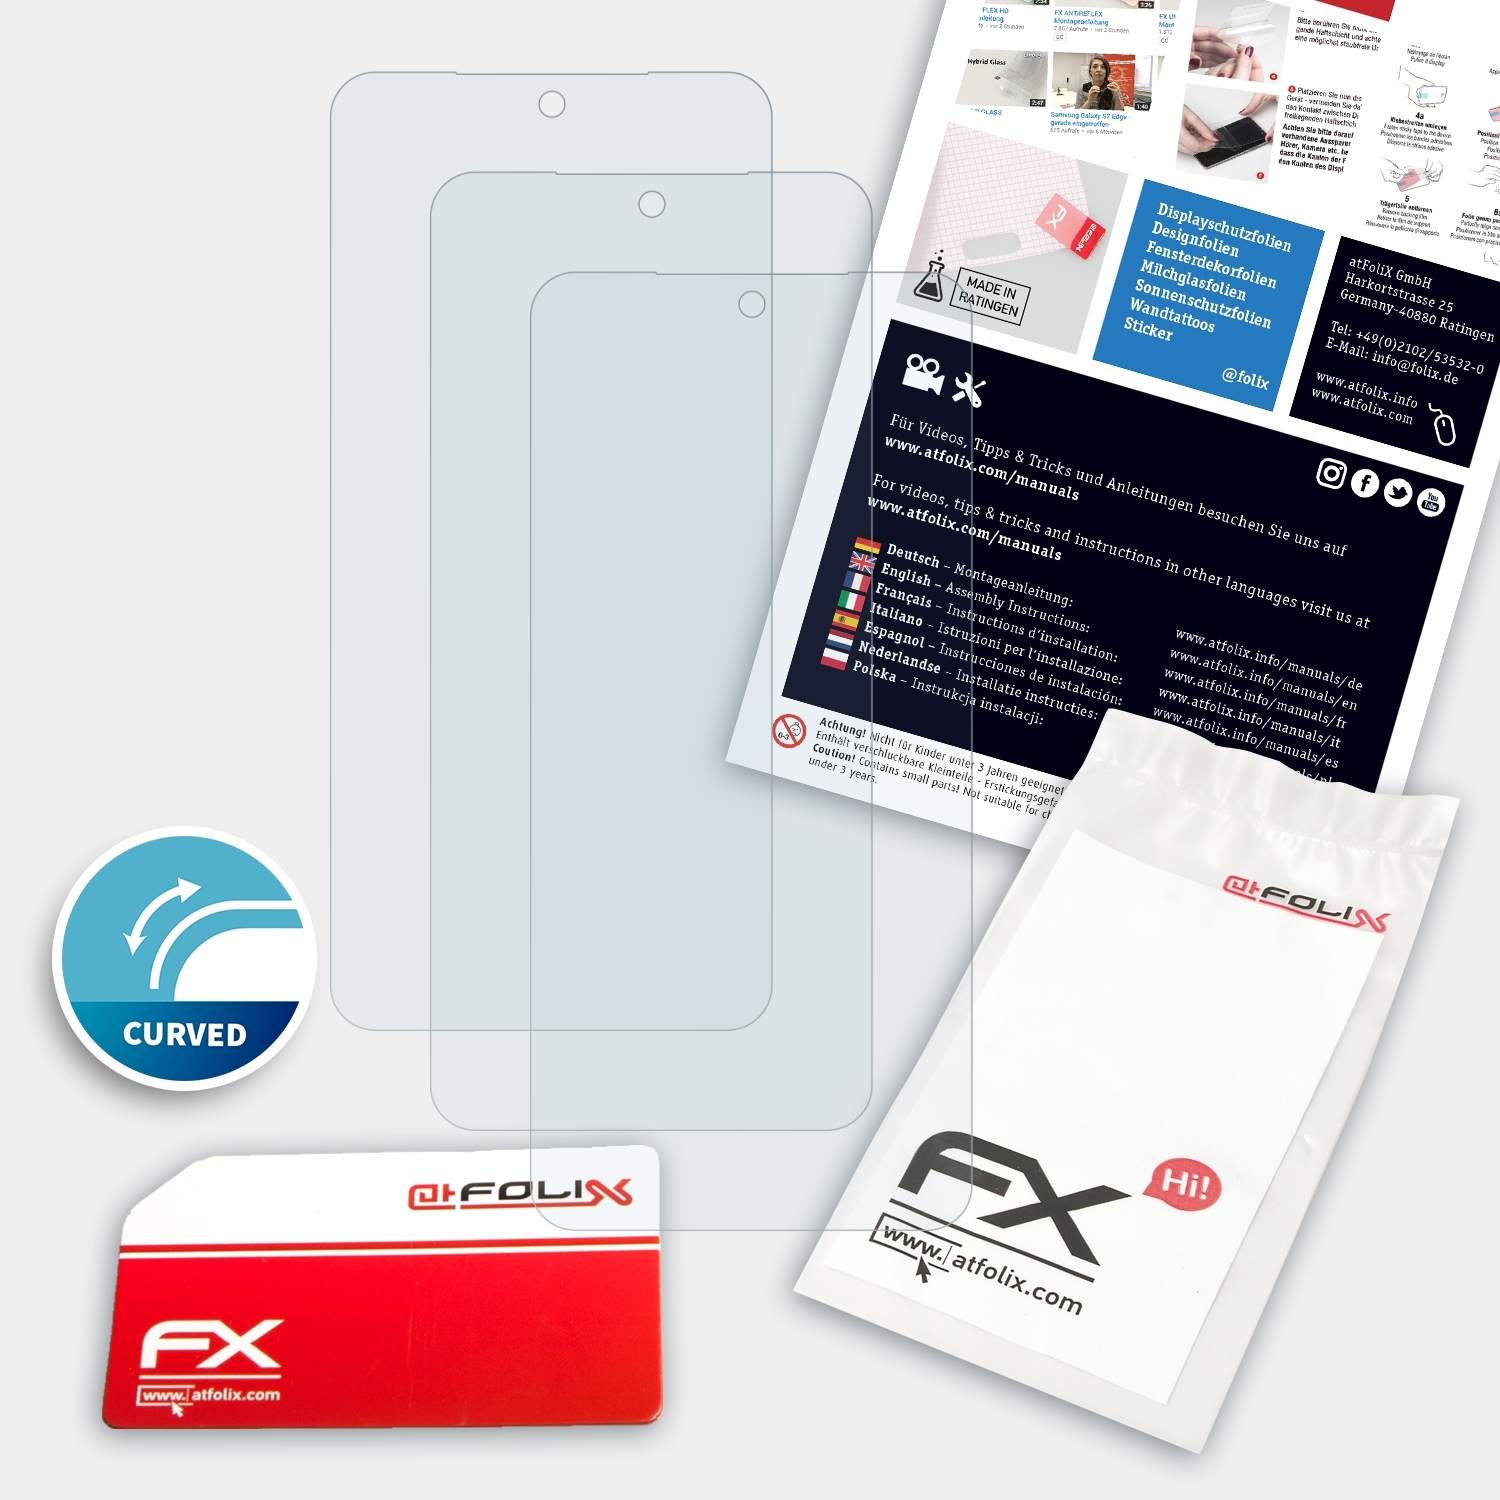 ATFOLIX 3x FX-ActiFleX Displayschutz(für iQOO Vivo 7)